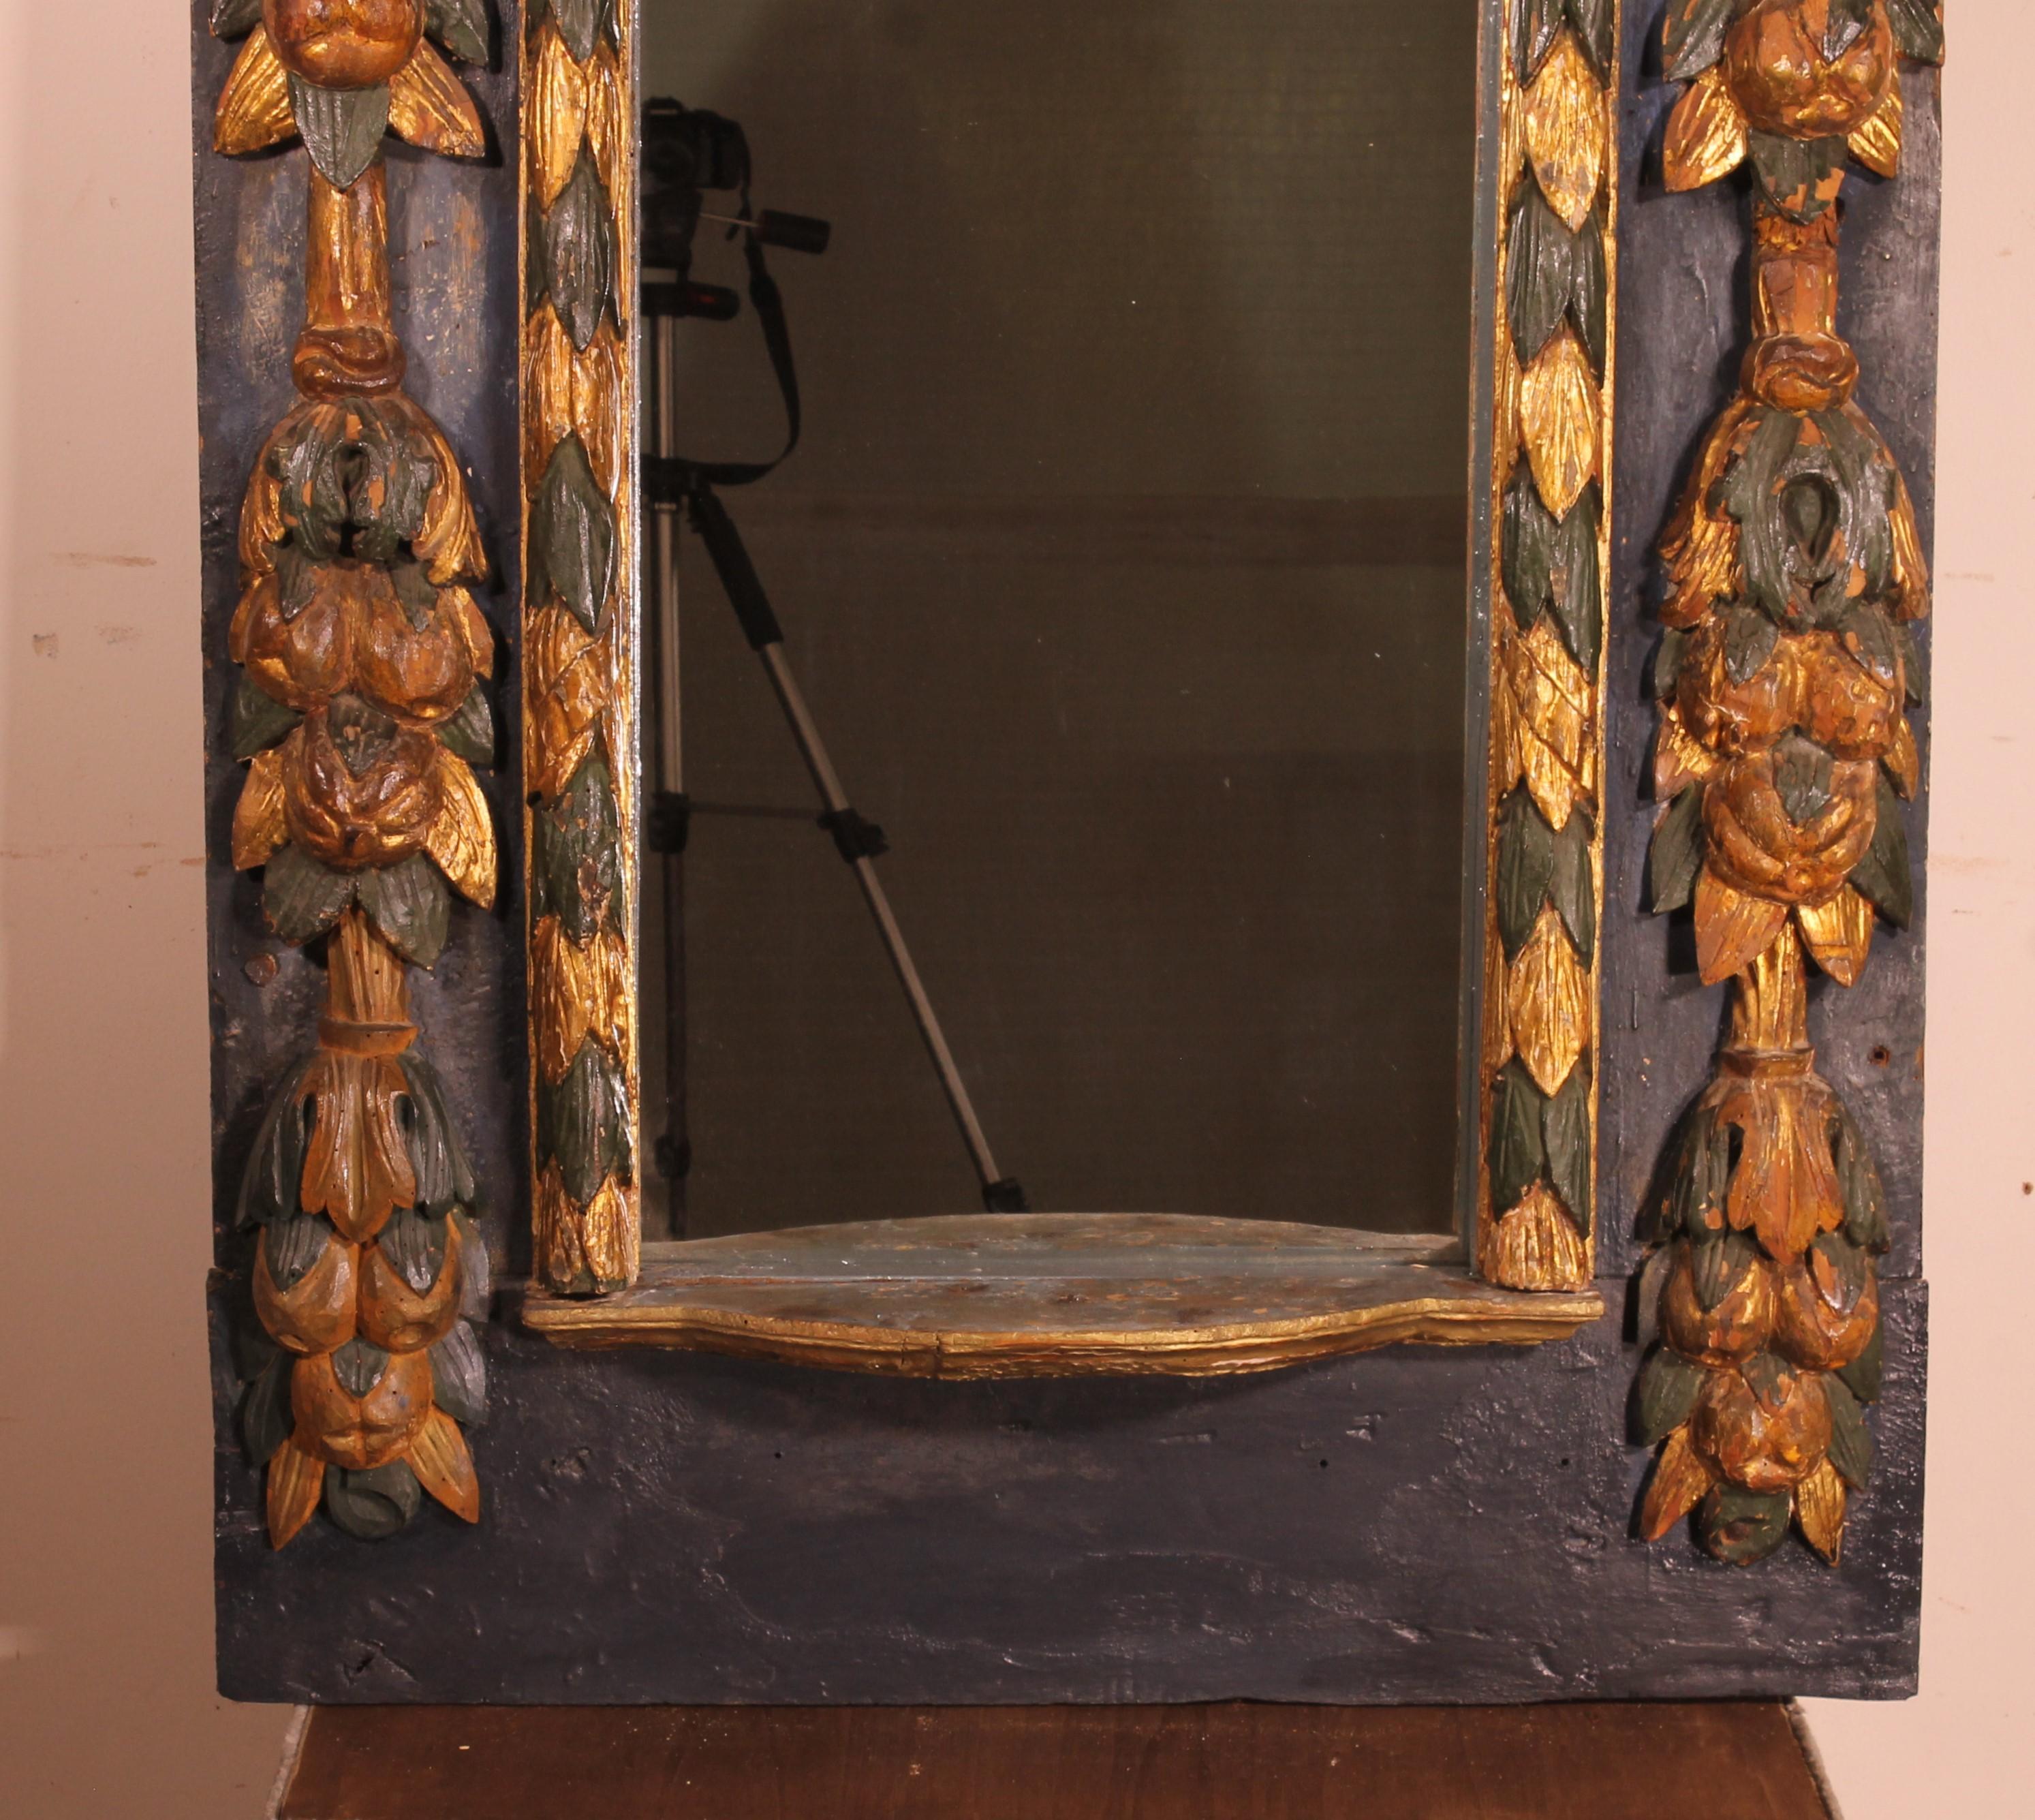 Prächtiger und seltener spanischer Spiegel aus polychromem Holz aus dem 17.
Dies ist eine Nische, die in einen Spiegel verwandelt wurde

Sehr schöne Holzschnitzerei, die im oberen Teil mit einem Festzelt verziert ist. Die Pfosten sind ebenfalls mit